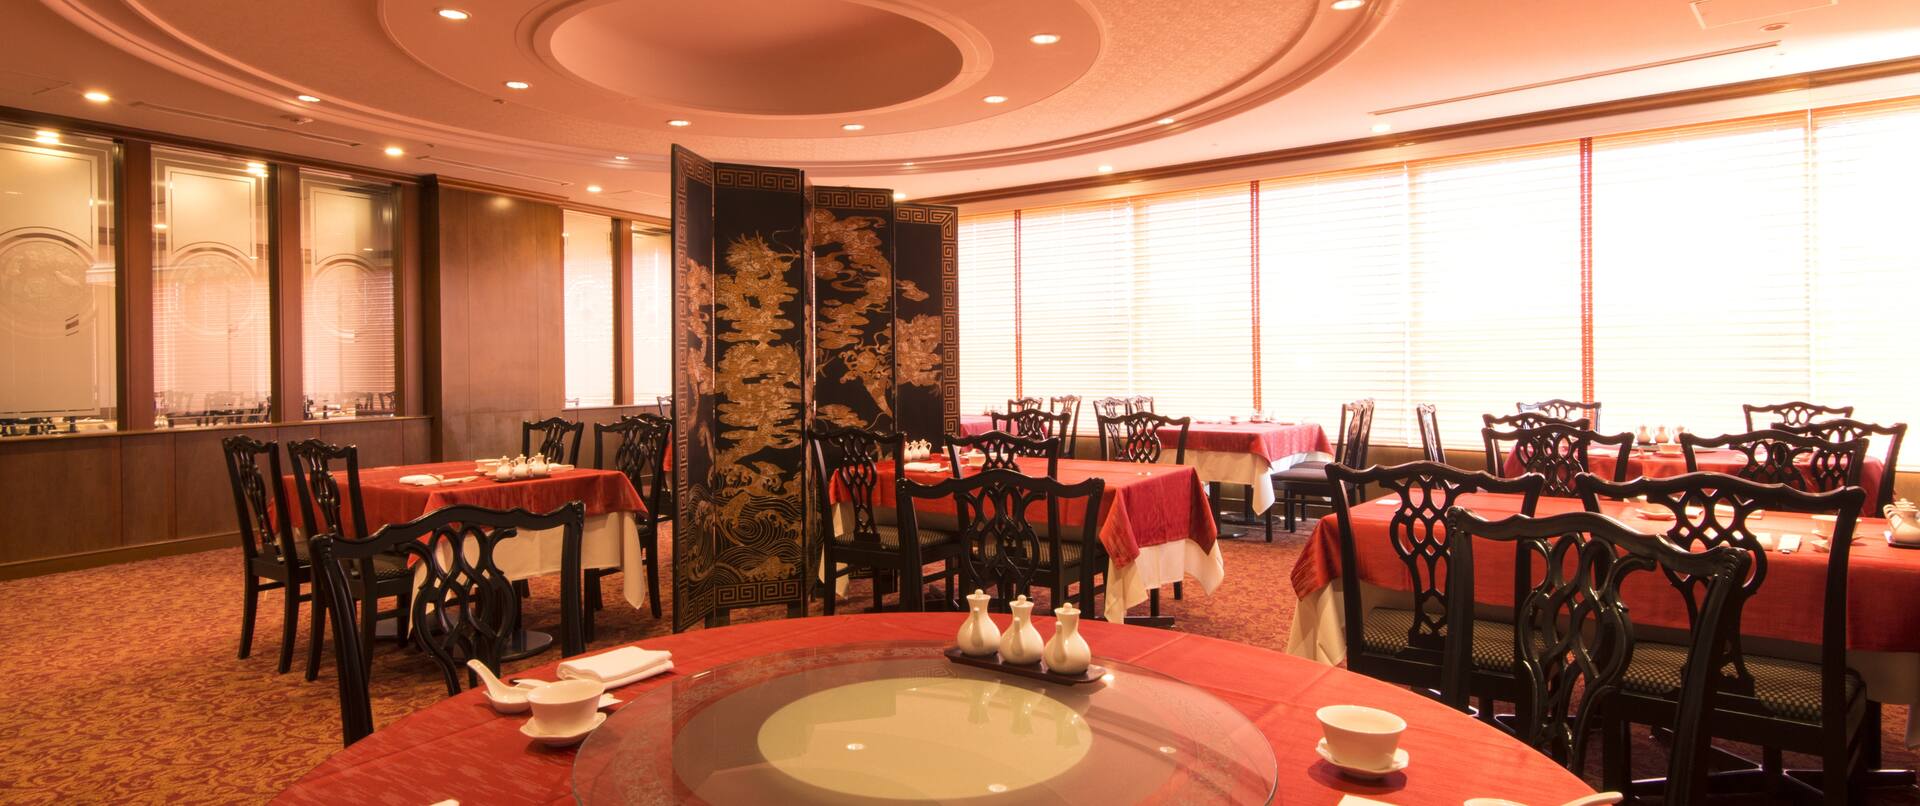 Baien Chinese Restaurant